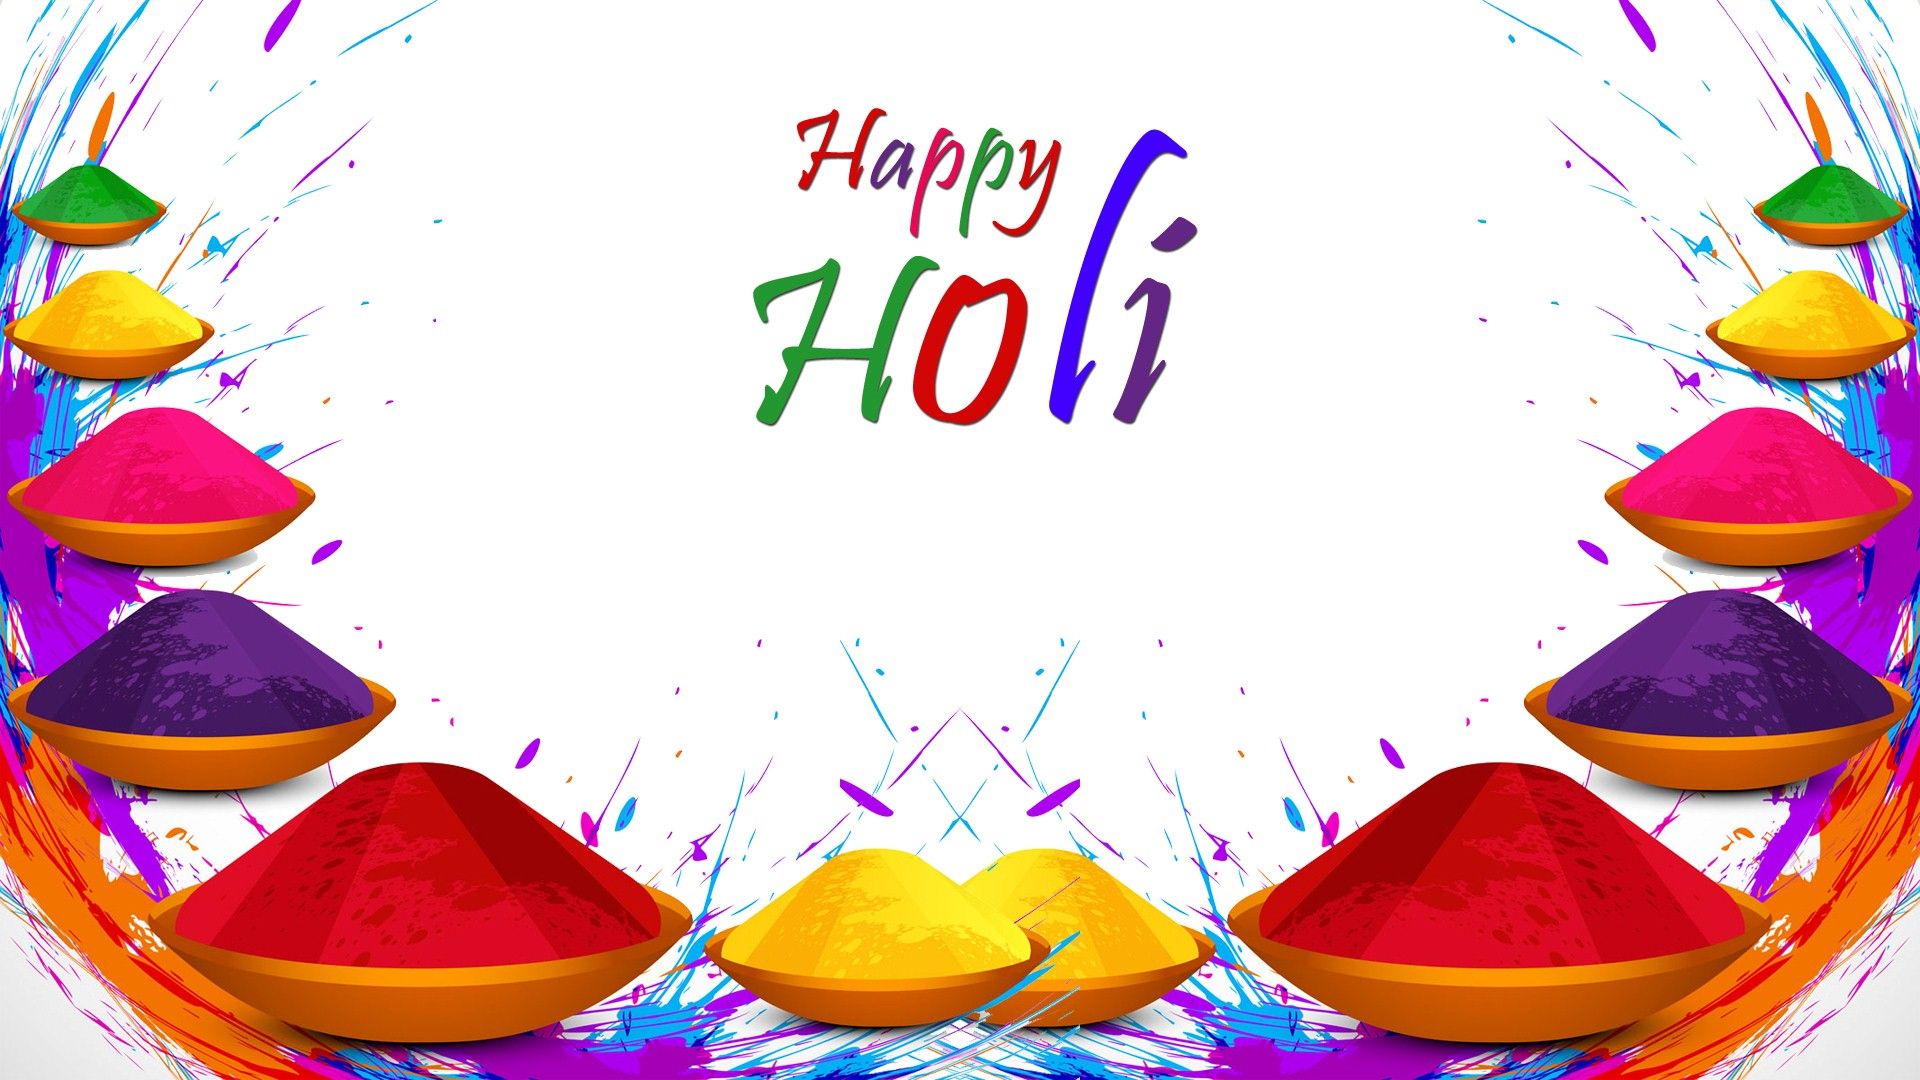 Happy Holi image, Happy Holi wallpapers, Happy Holi photos, Happy...